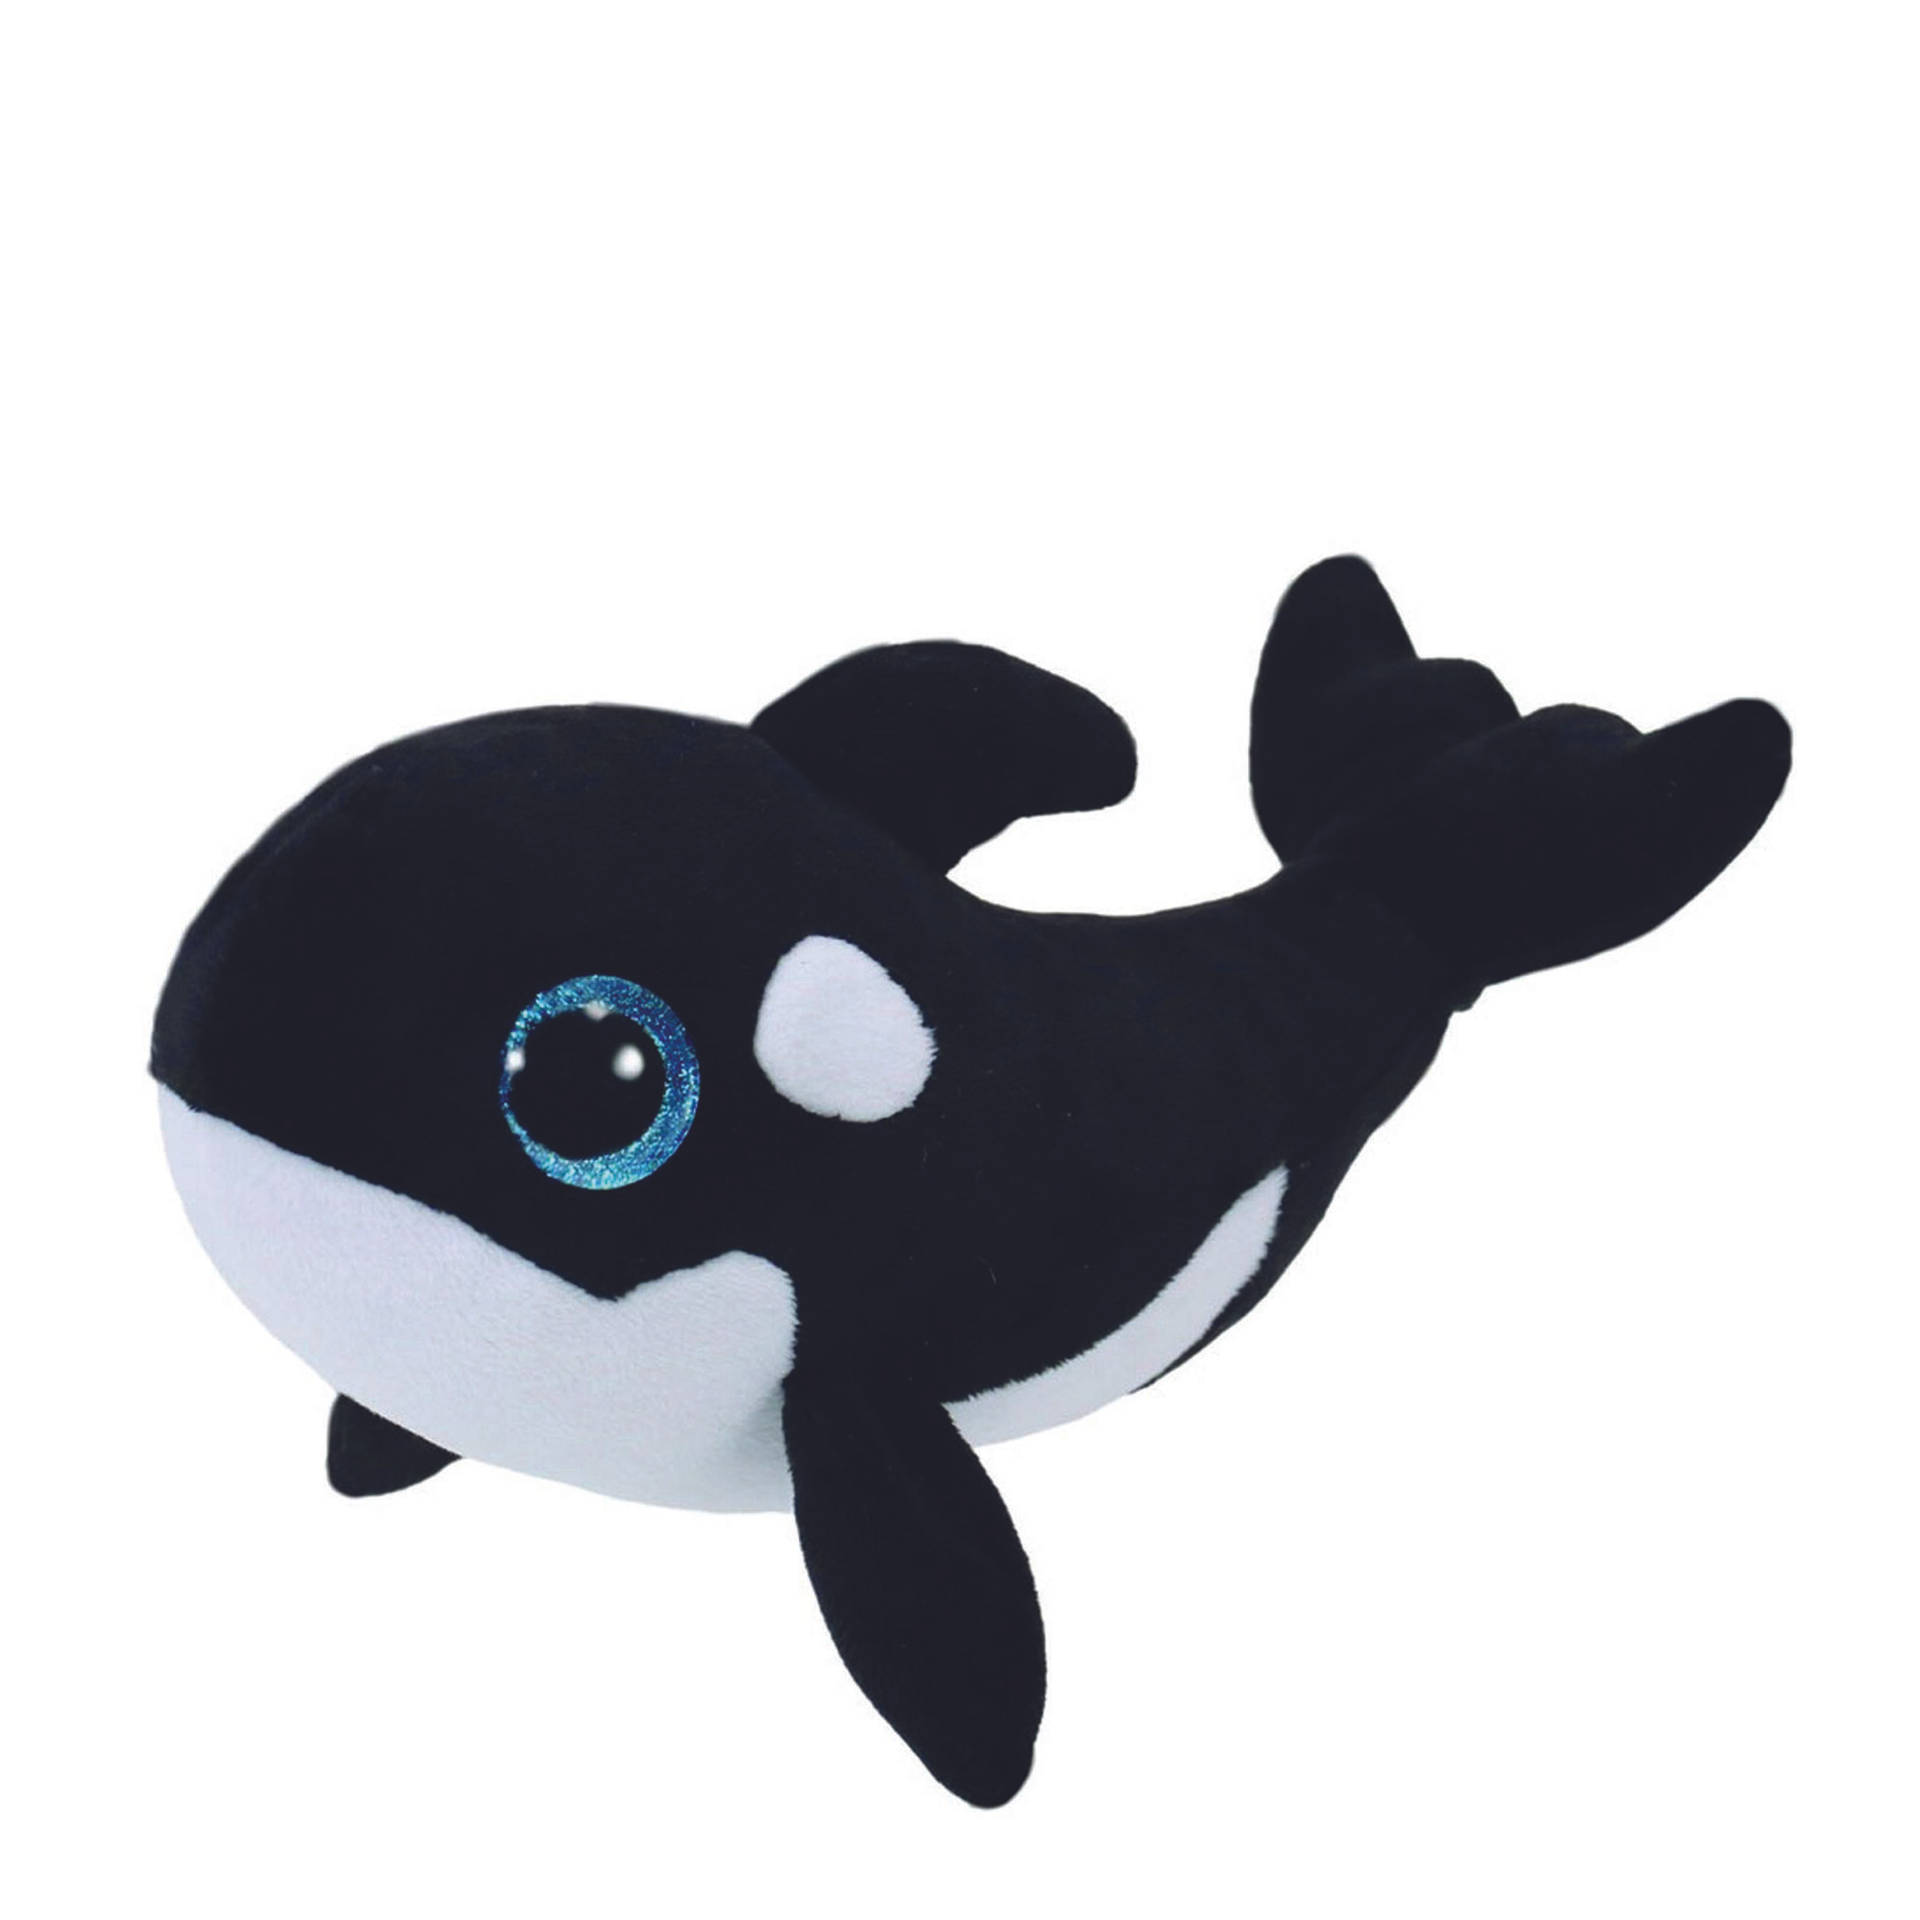 Beanie Boos Whale Wallpaper